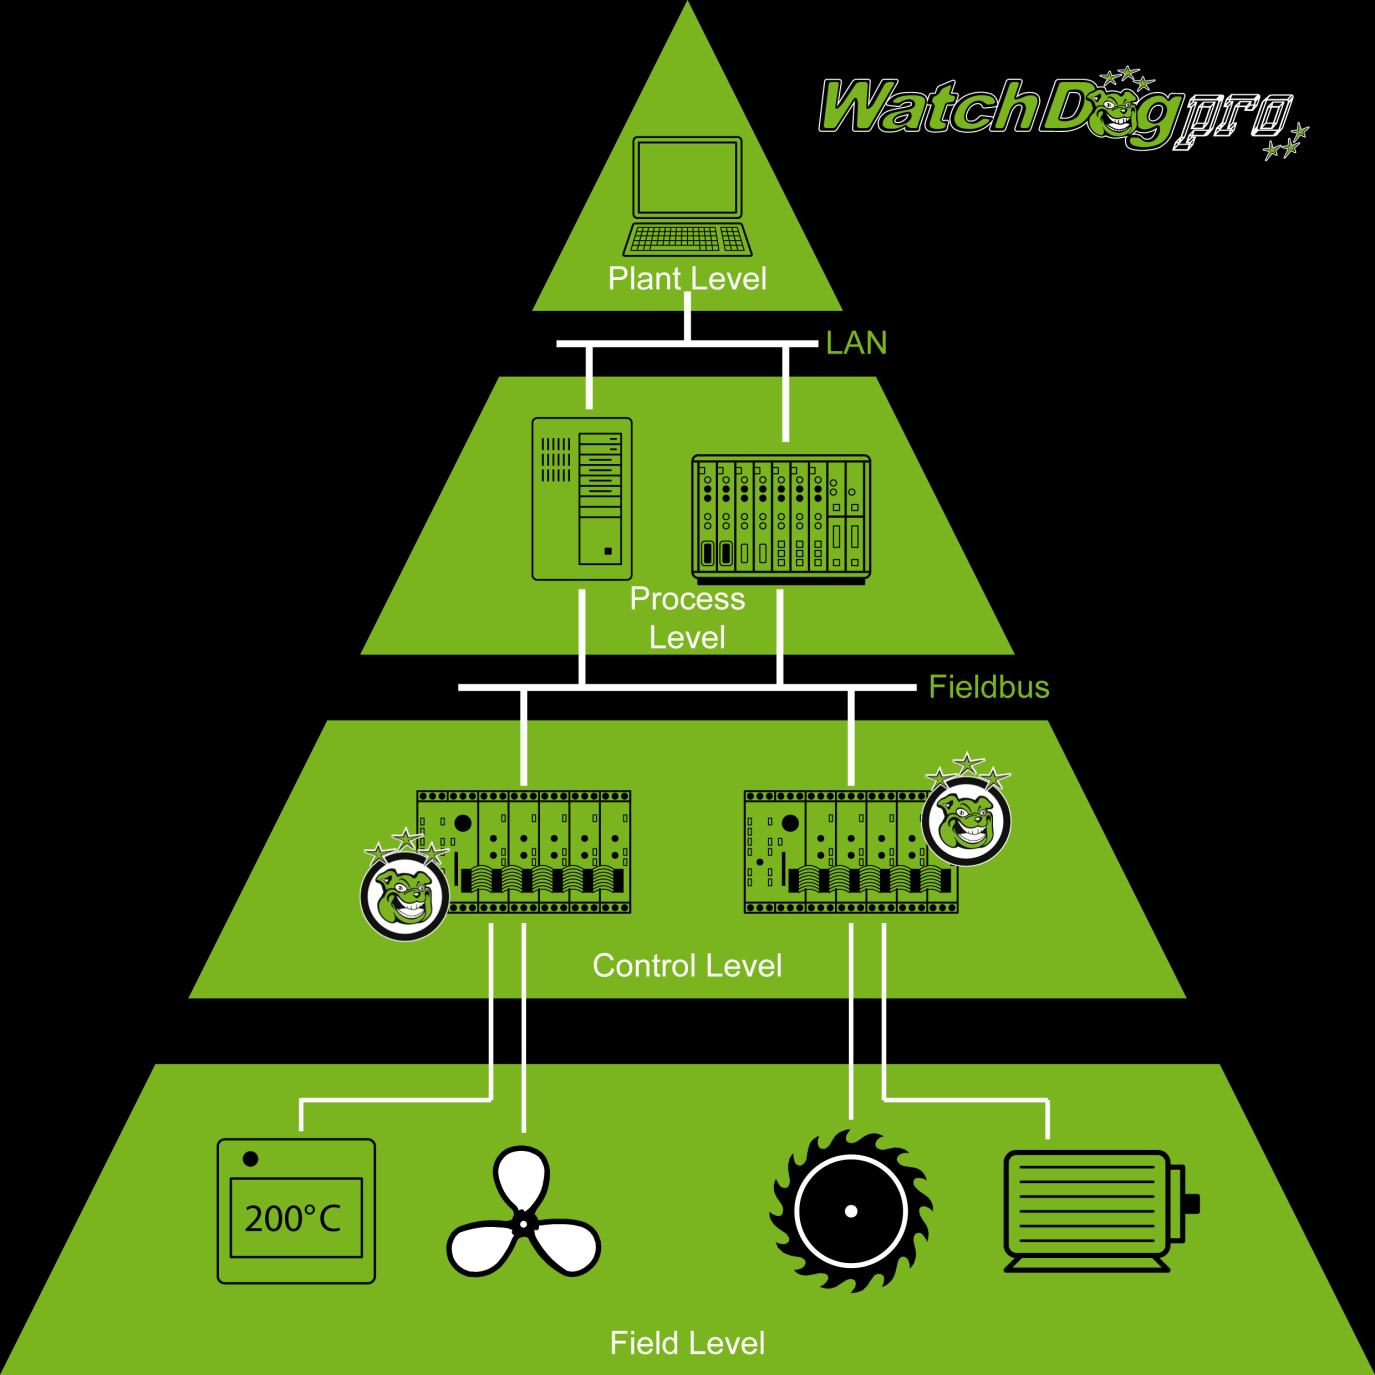 WatchDog pro használatával megosztott monitoring és vezérlő feladatok hajthatók végre a folyamatok automatizálásánál.